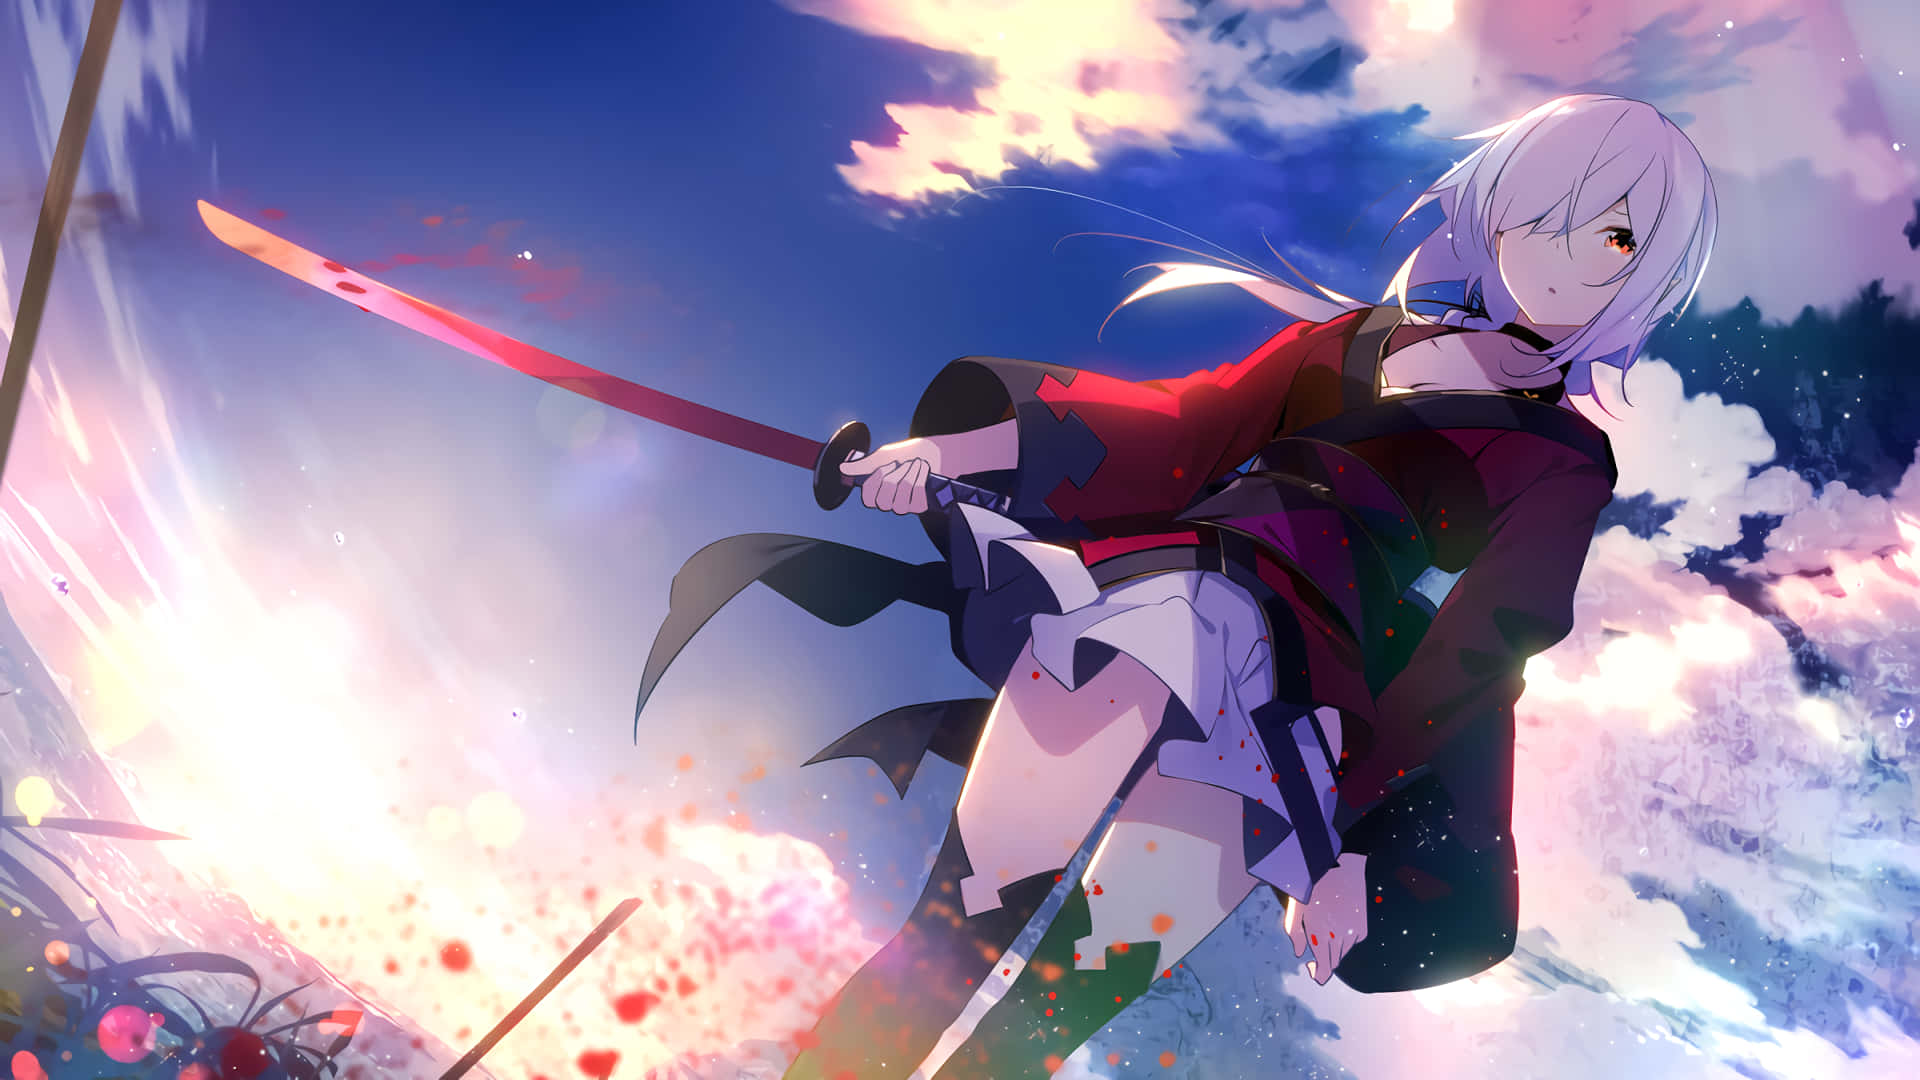 Anime Girl Swordsman Wallpapers  Top Free Anime Girl Swordsman Backgrounds   WallpaperAccess